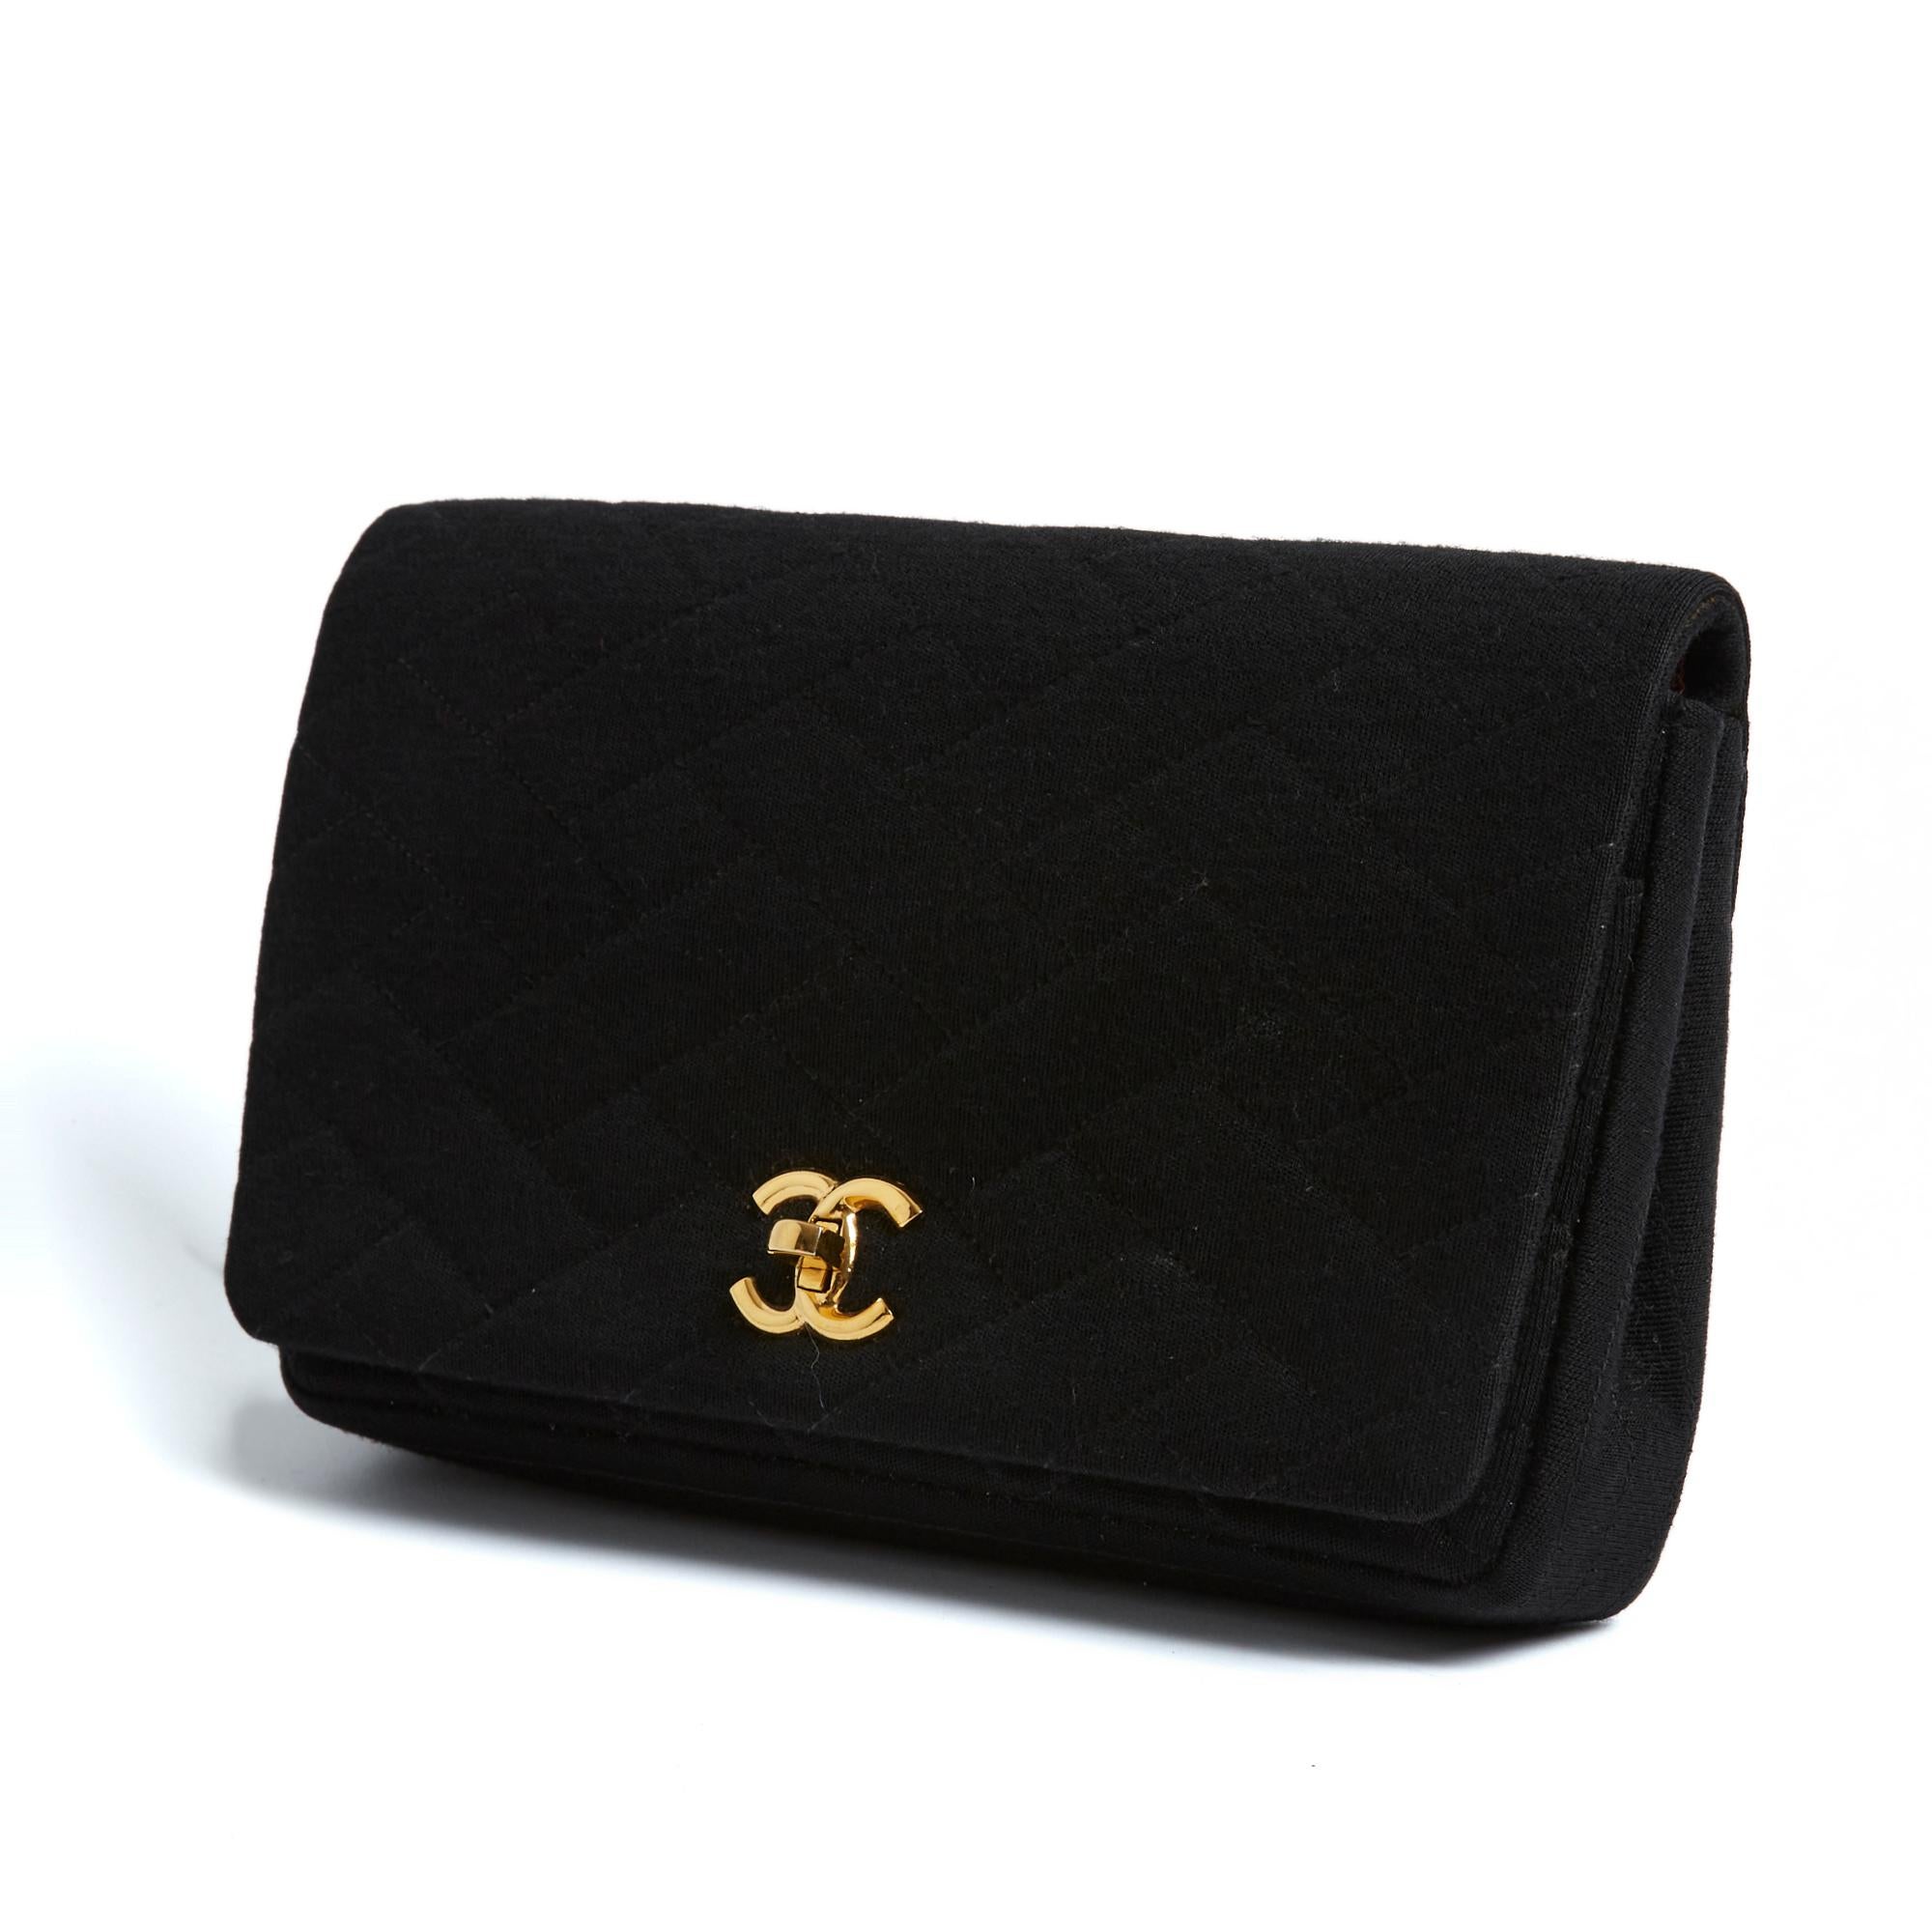 Pochette Chanel série Timeless ou Classique en jersey de laine matelassé noir, rabat avant avec fermoir quart de tour CC ou Turnlock en métal doré, intérieur en cuir bordeaux avec 1 poche zippée et une double poche plaquée, ainsi qu'une grande poche